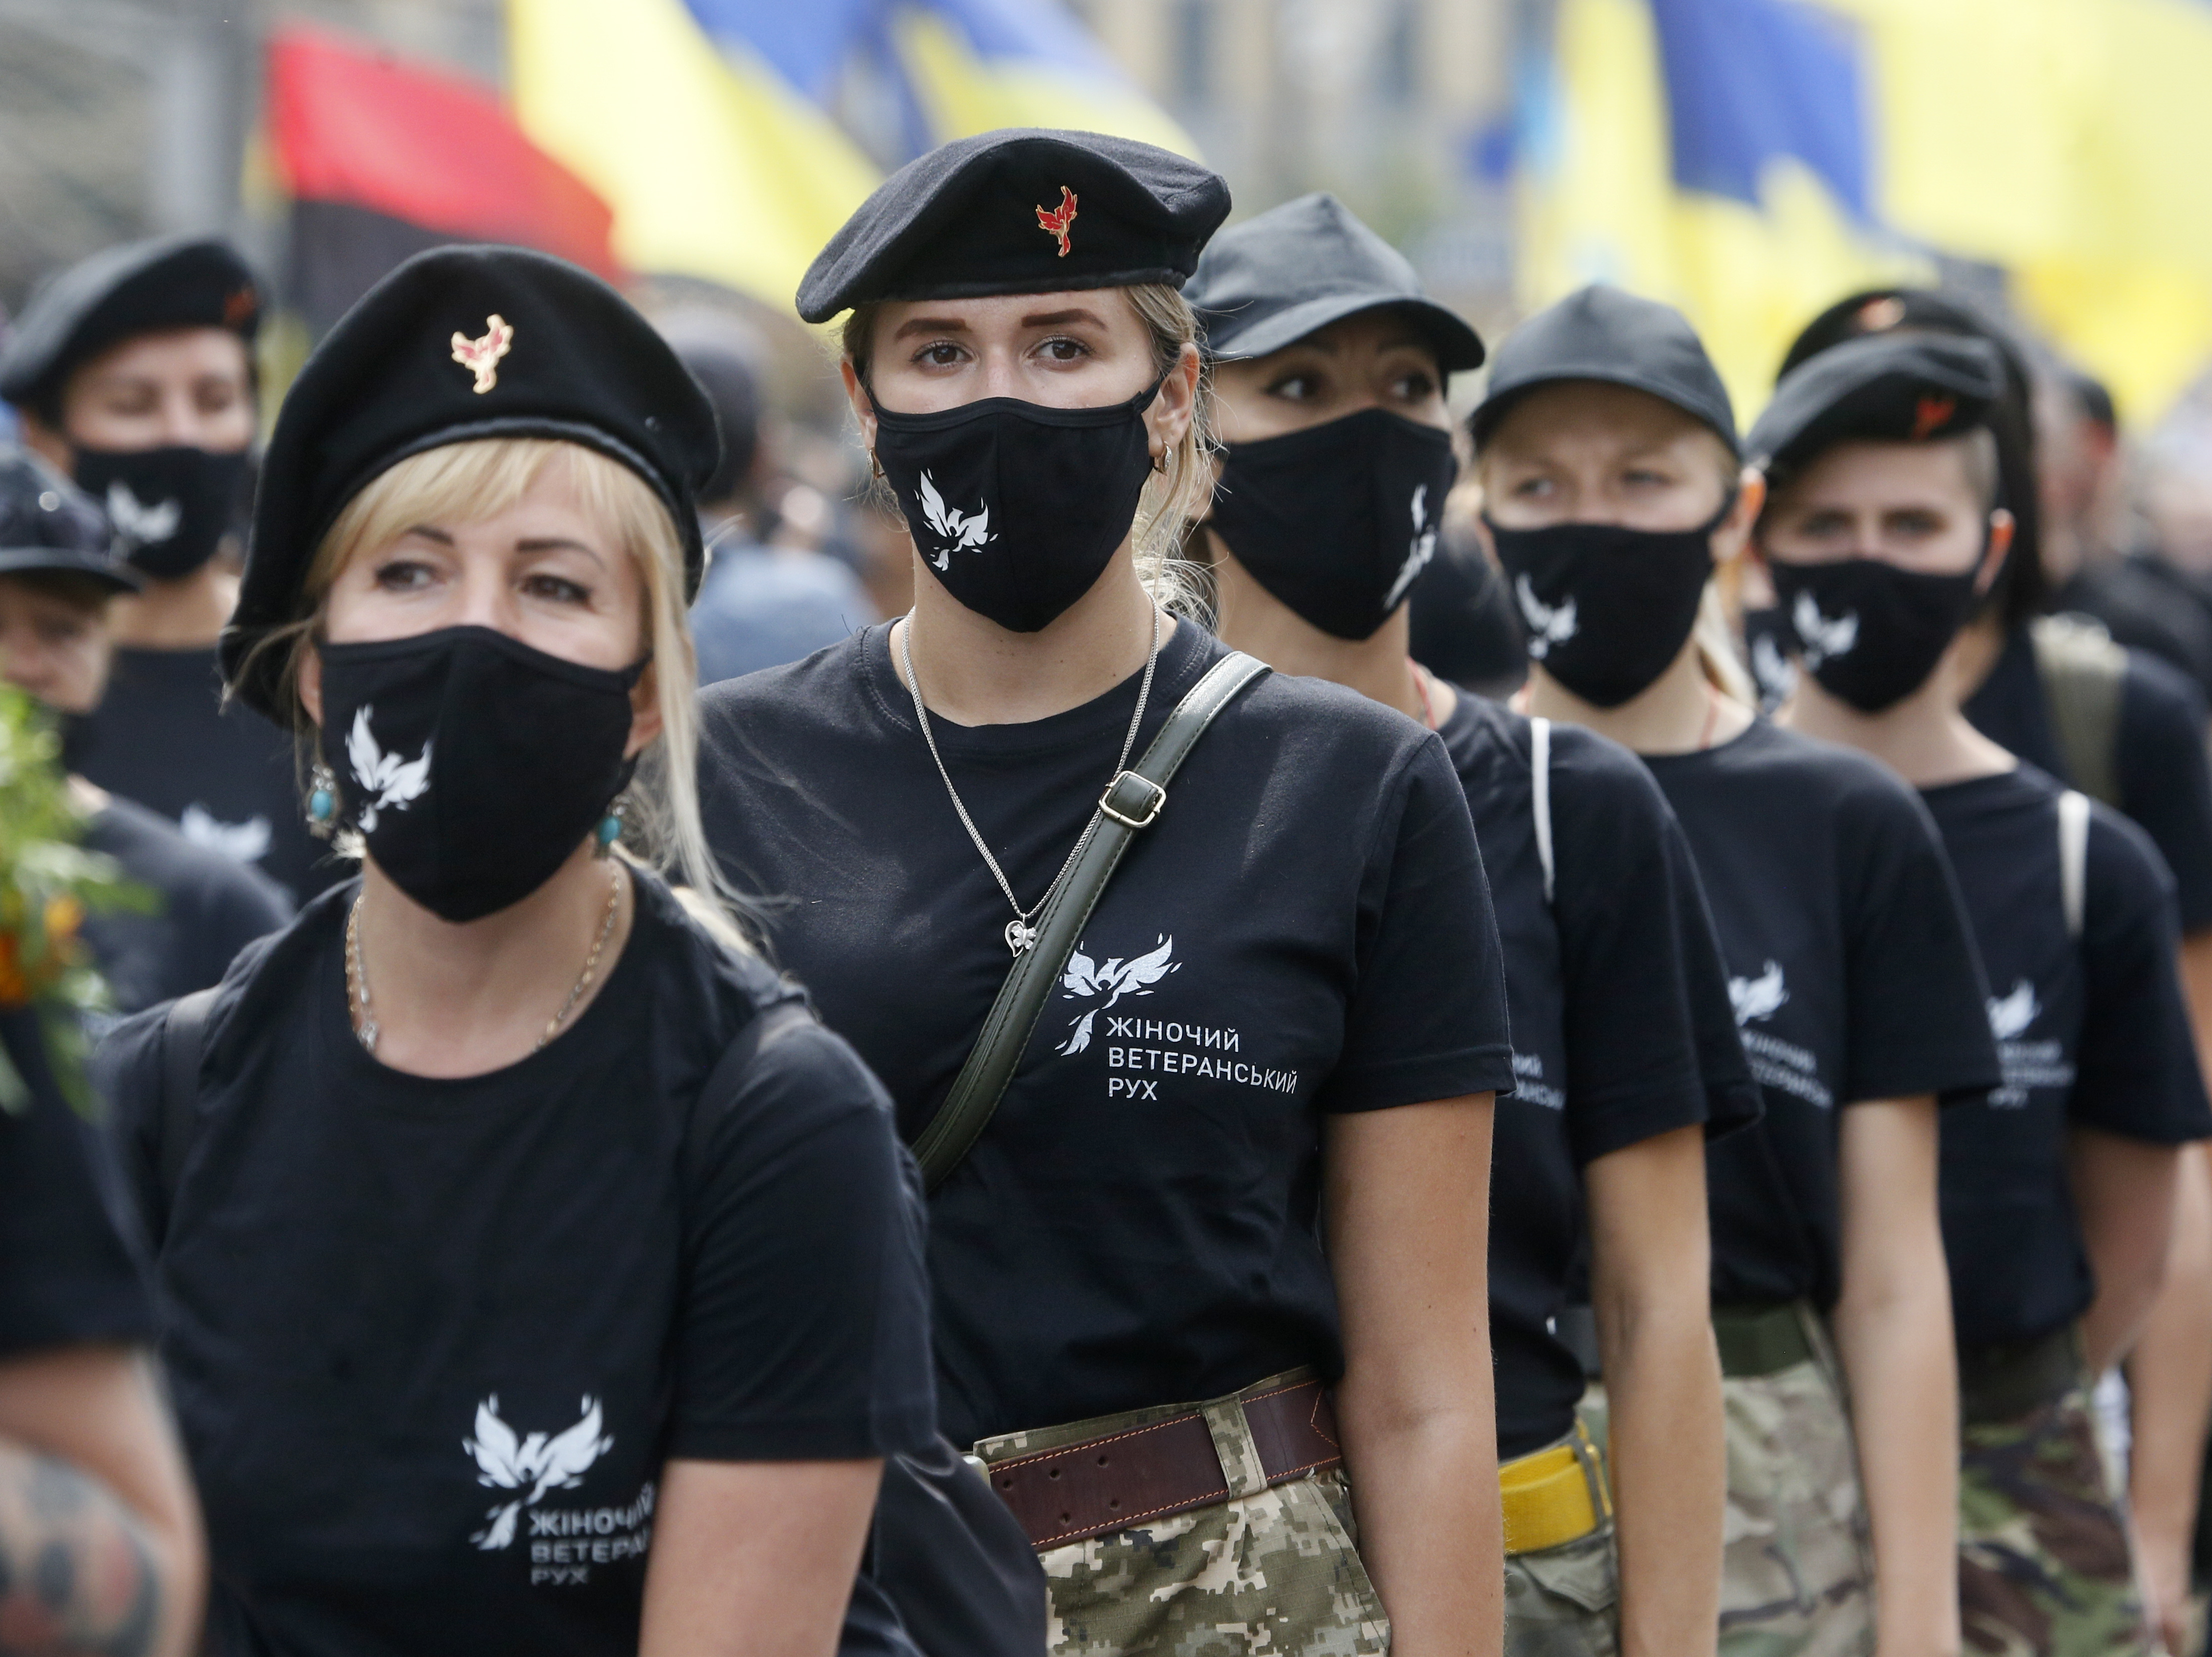 Lobsession chinoise pour les femmes ukrainiennes image